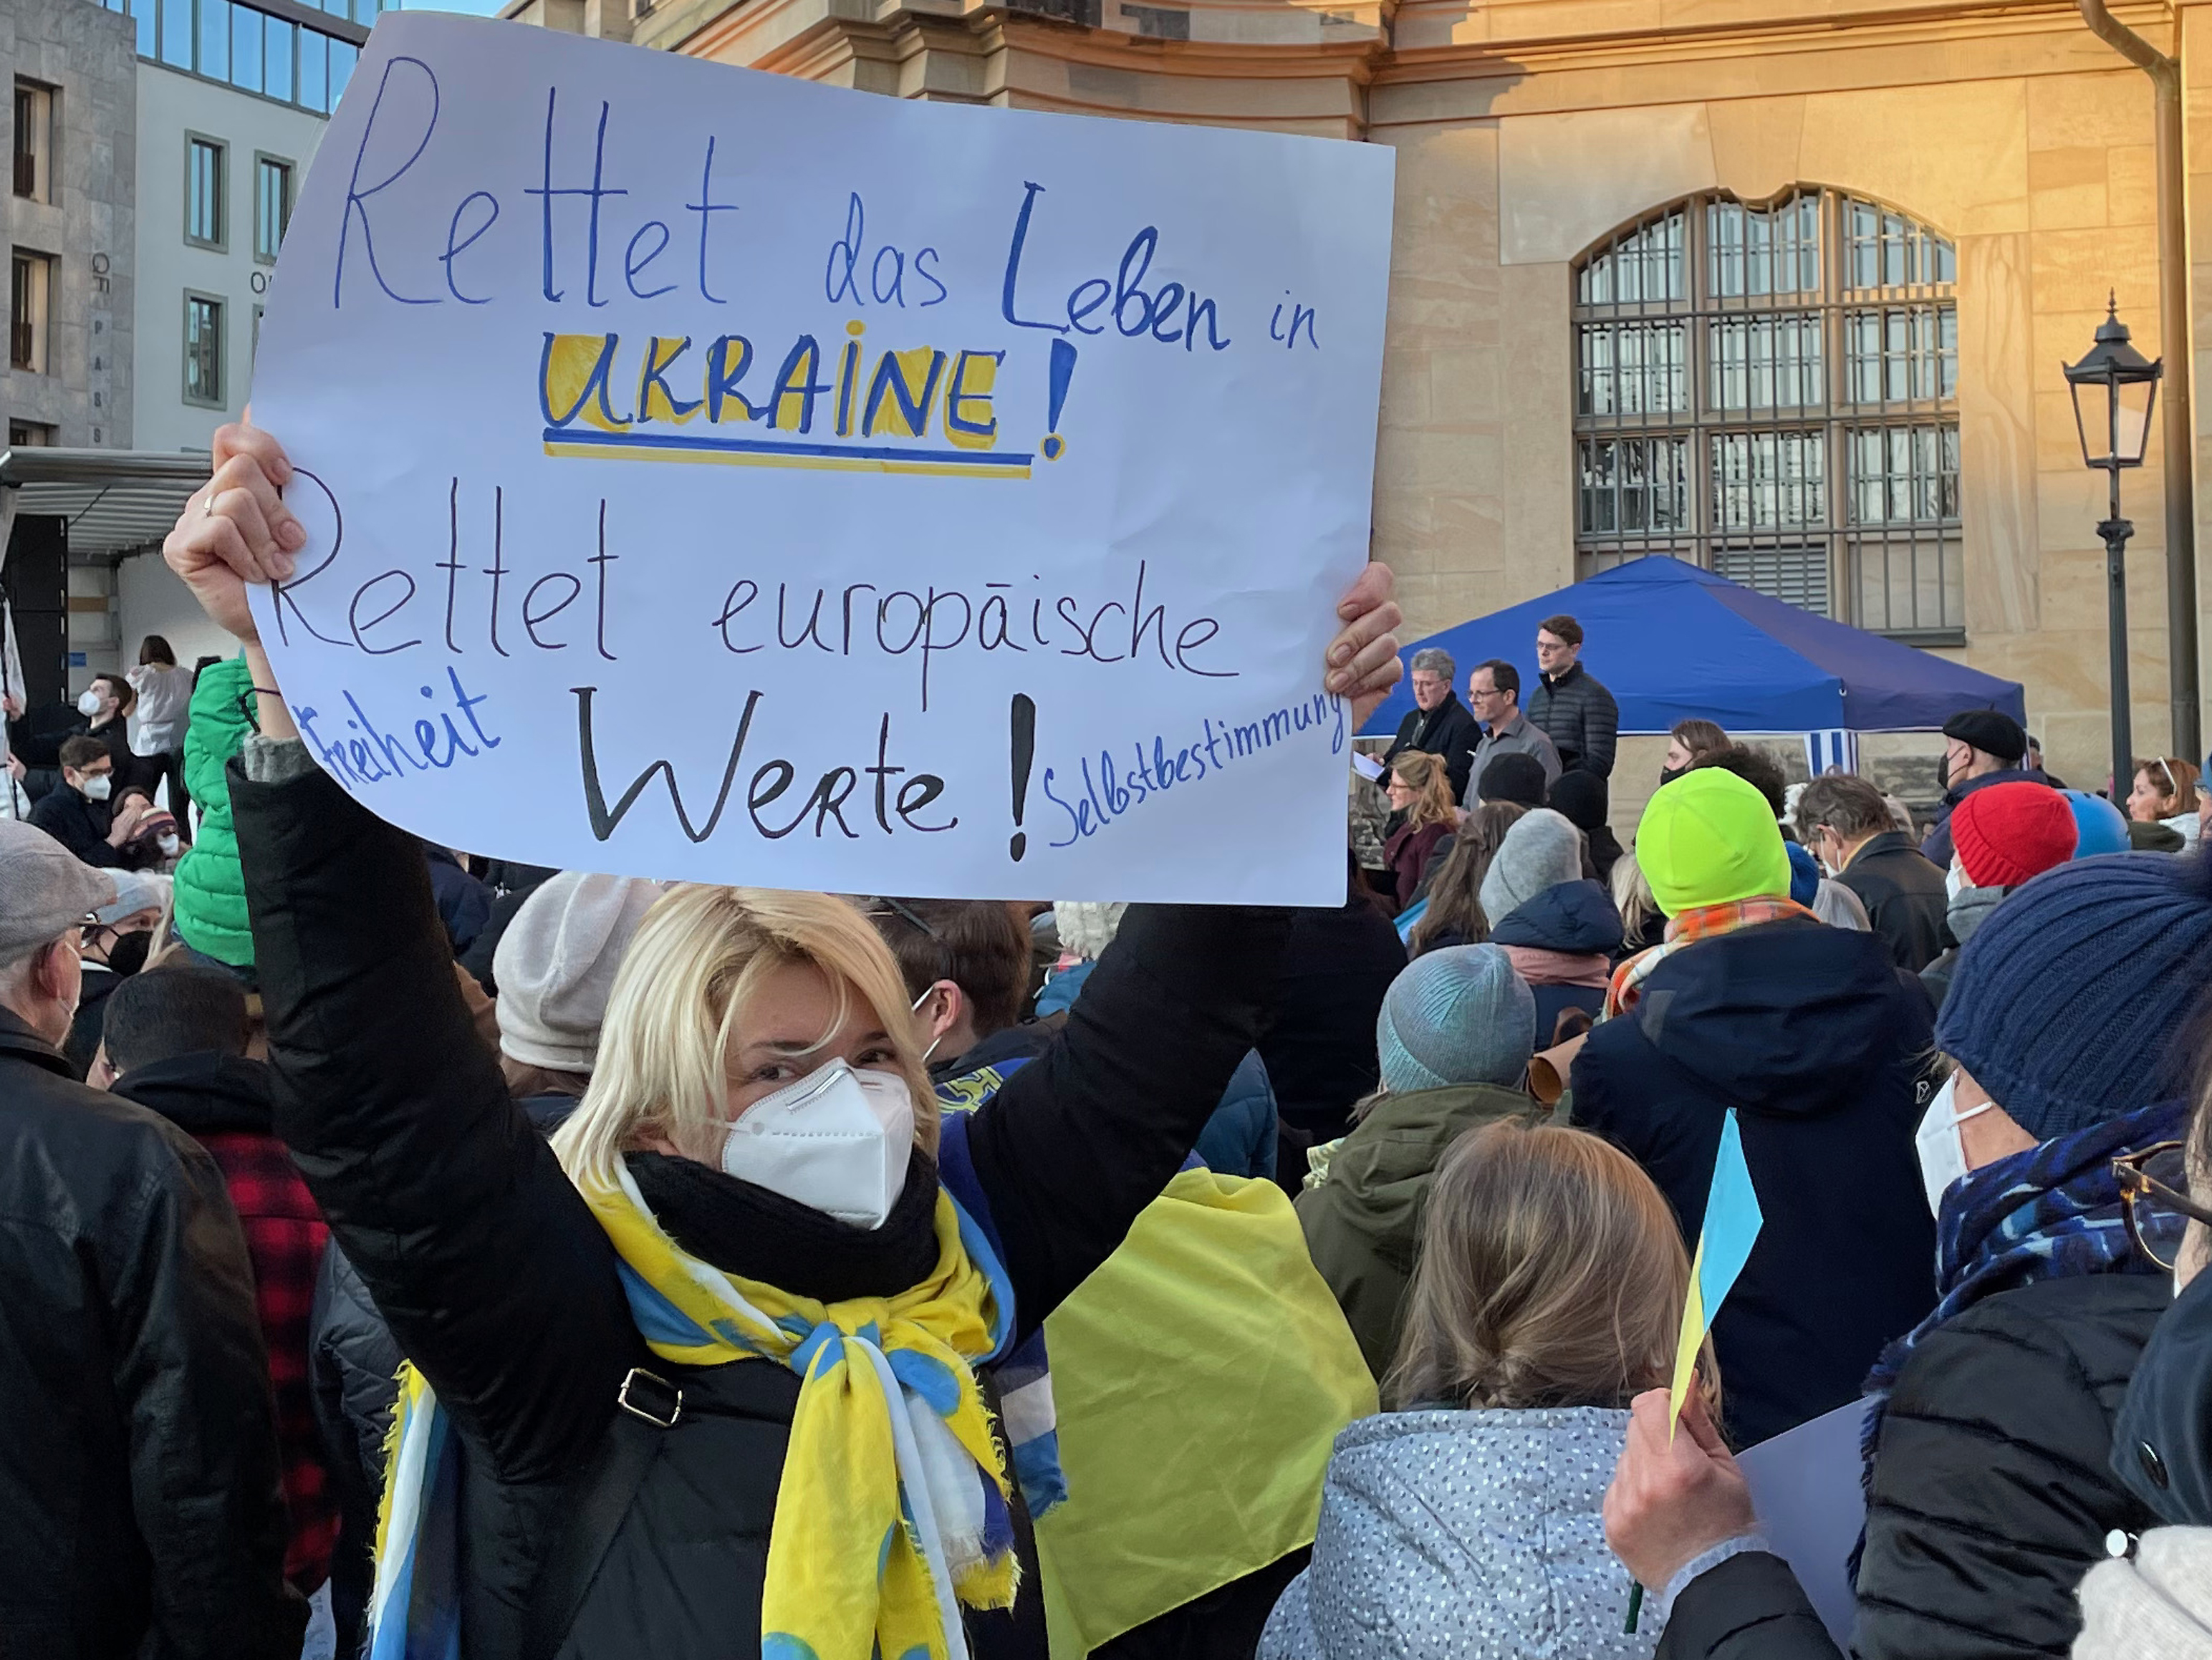 Foto einer Demonstration für die Ukraine in Dresden. Eine Teilnehmerin hält ein Schild mit folgender Aufschrift in die Höhe: "Rettet das Leben in [sic] Ukraine! Rettet europäische Werte! Freiheit, Selbstbestimmung."